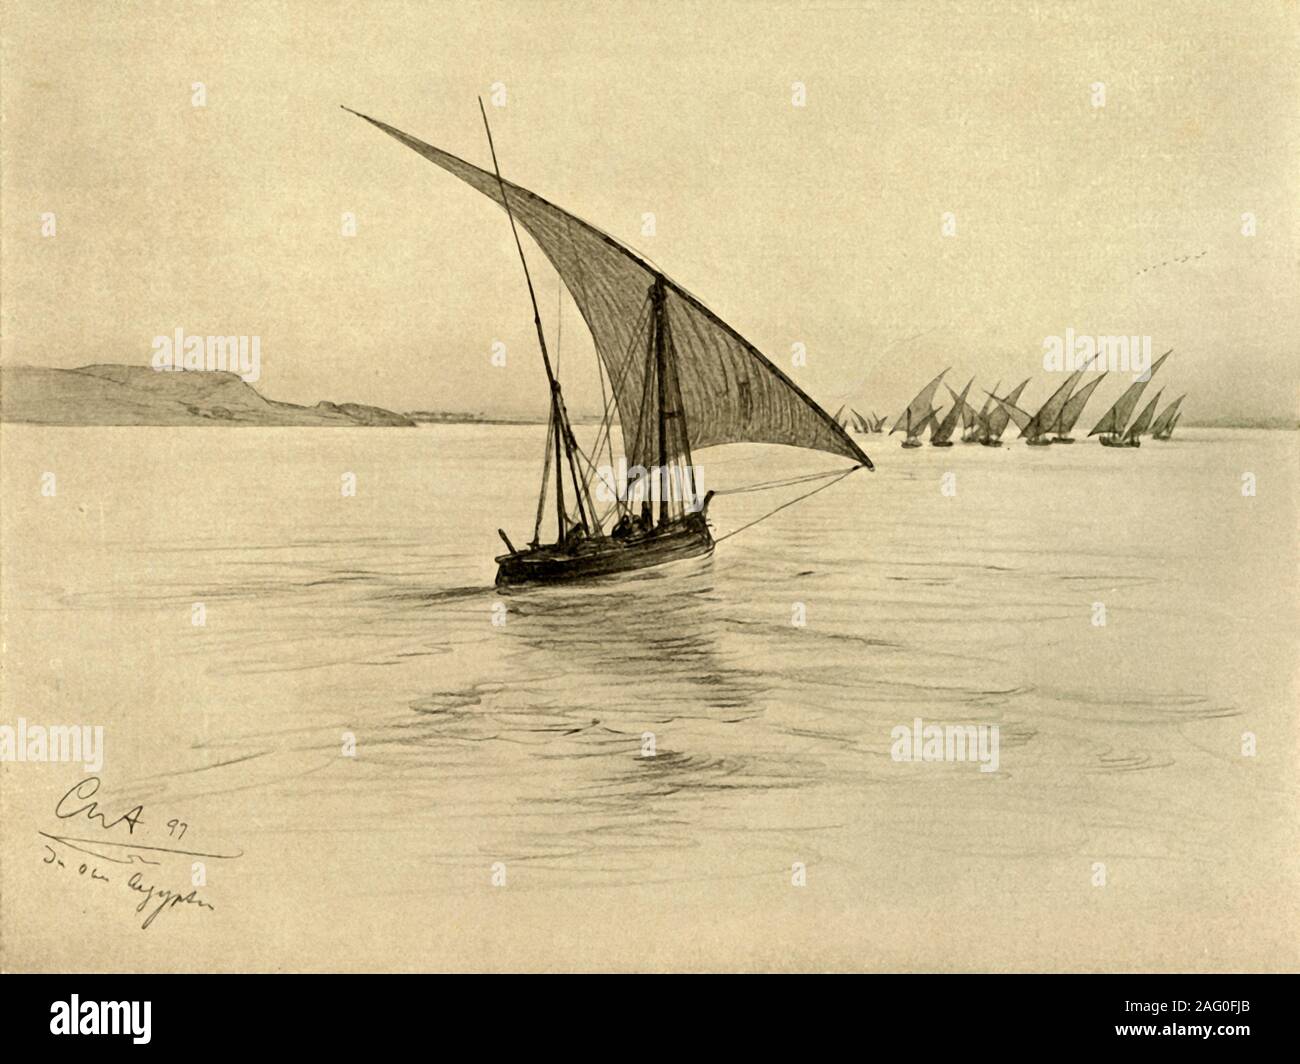 Feluccas on the River Nile, Cairo, Egypt, 1898. From &quot;Rund um die Erde&quot;, by C. W. Allers. [Union Deutsche Verlagsgesellschaft, Stuttgart, 1898] Stock Photo